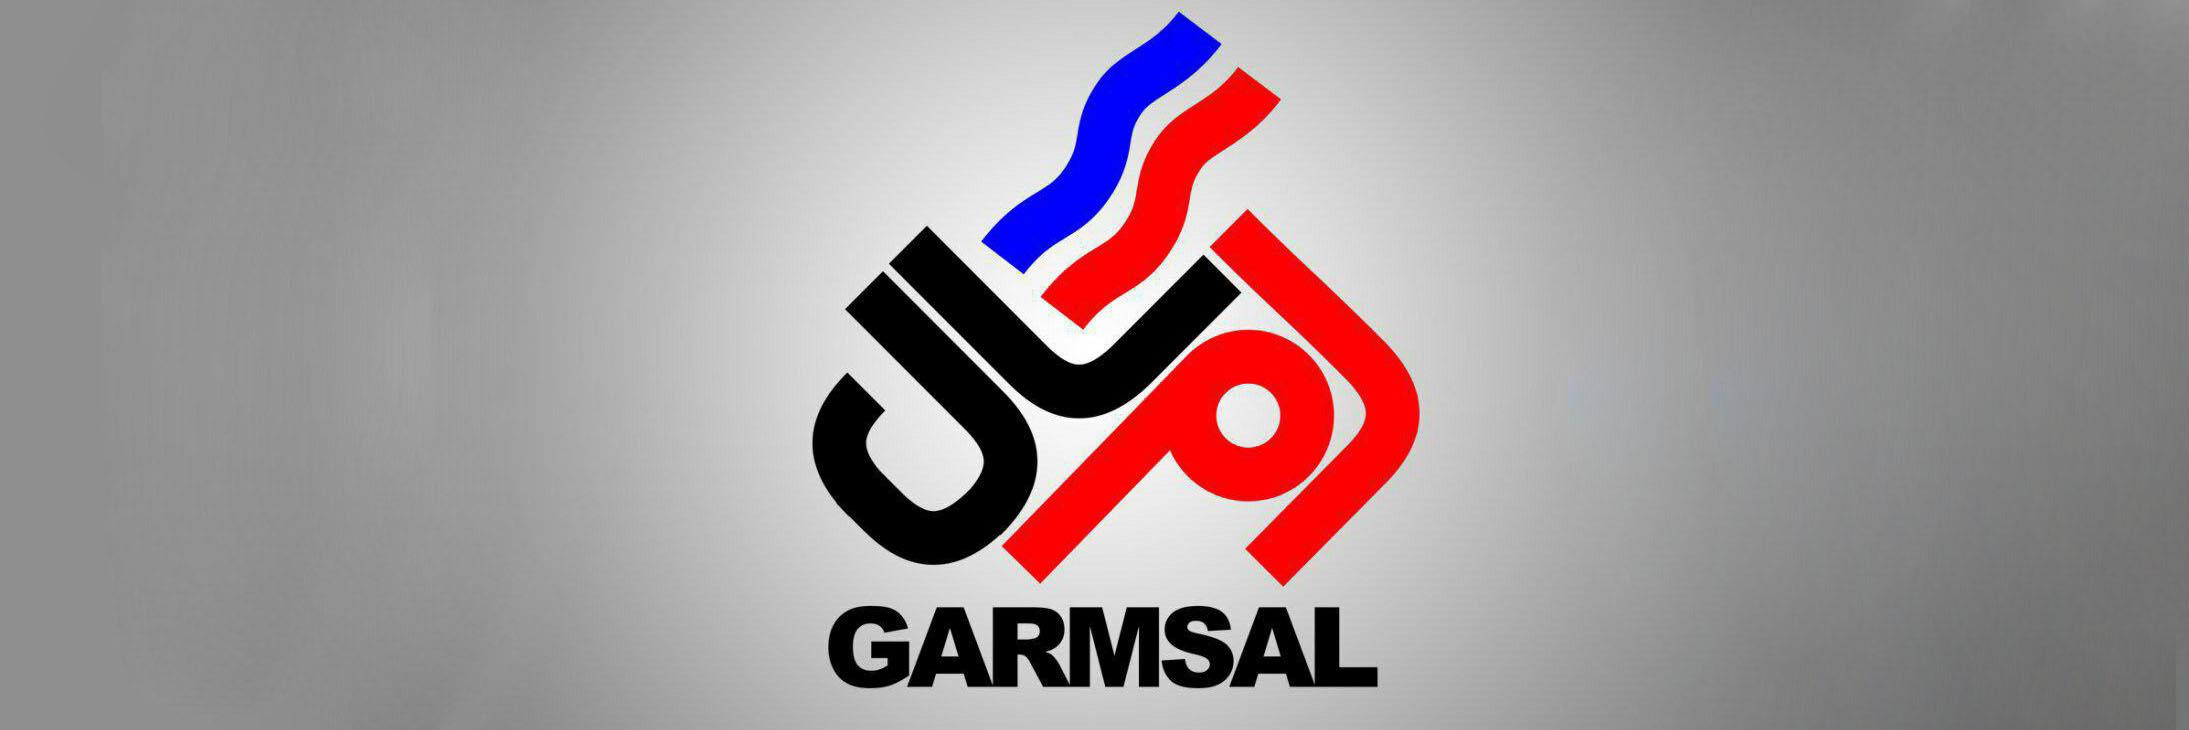 About Garmsal